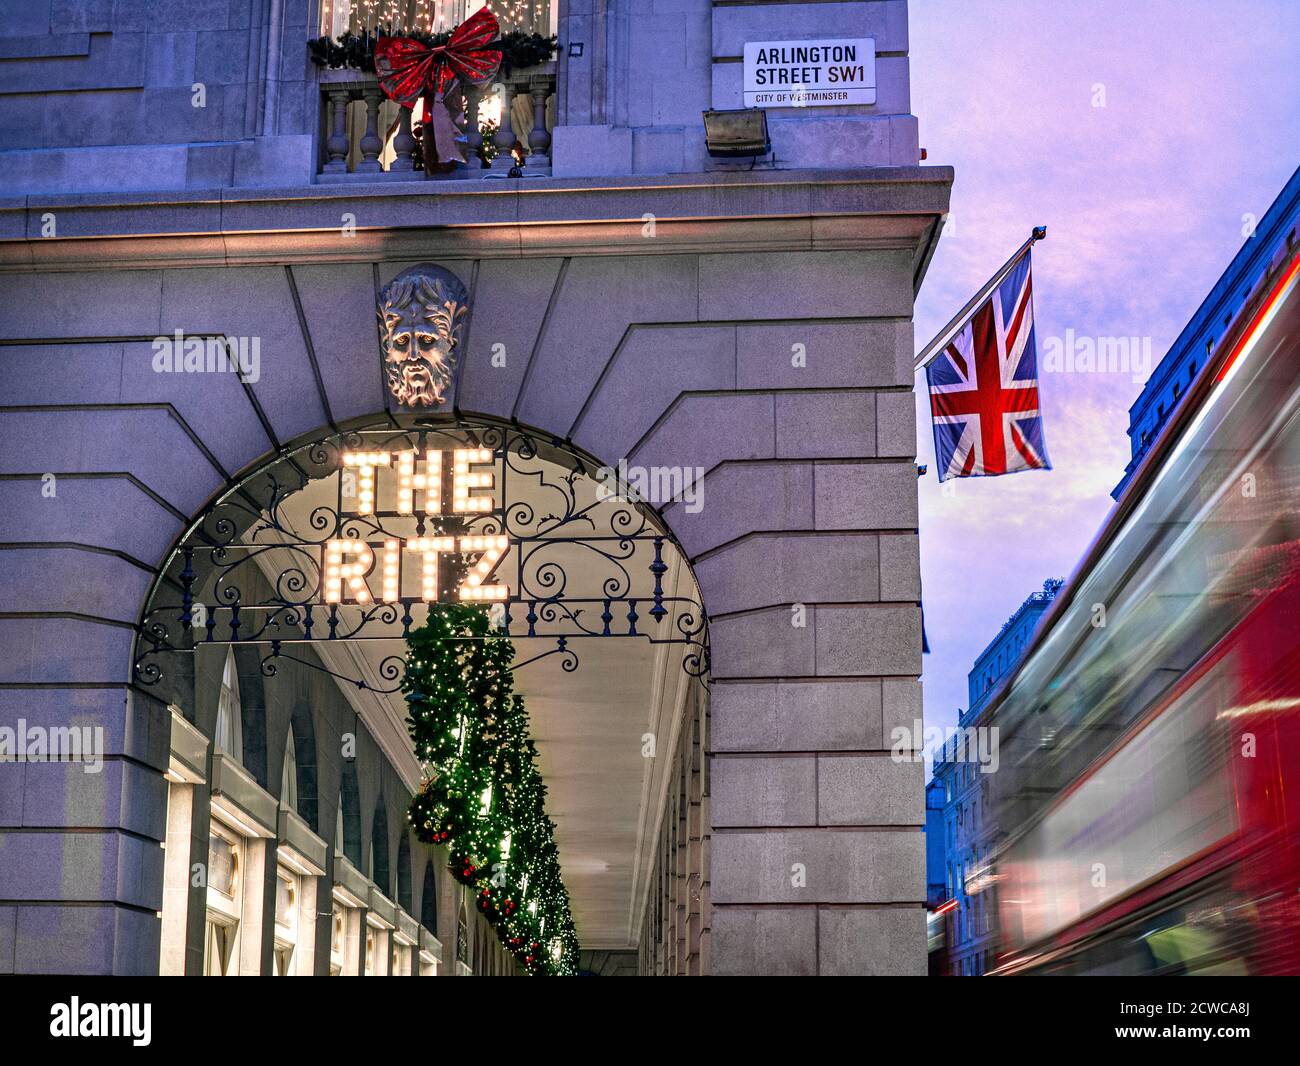 The Ritz Hotel zu Weihnachten, Abendlicht festliche Jahreszeit, Abendlicht ‘The Ritz’ Schild beleuchtet und eine Union Jack Flagge angezeigt, roten London Bus vorbei mit Geschwindigkeit Unschärfe. Arlington Street Piccadilly London, Großbritannien Stockfoto